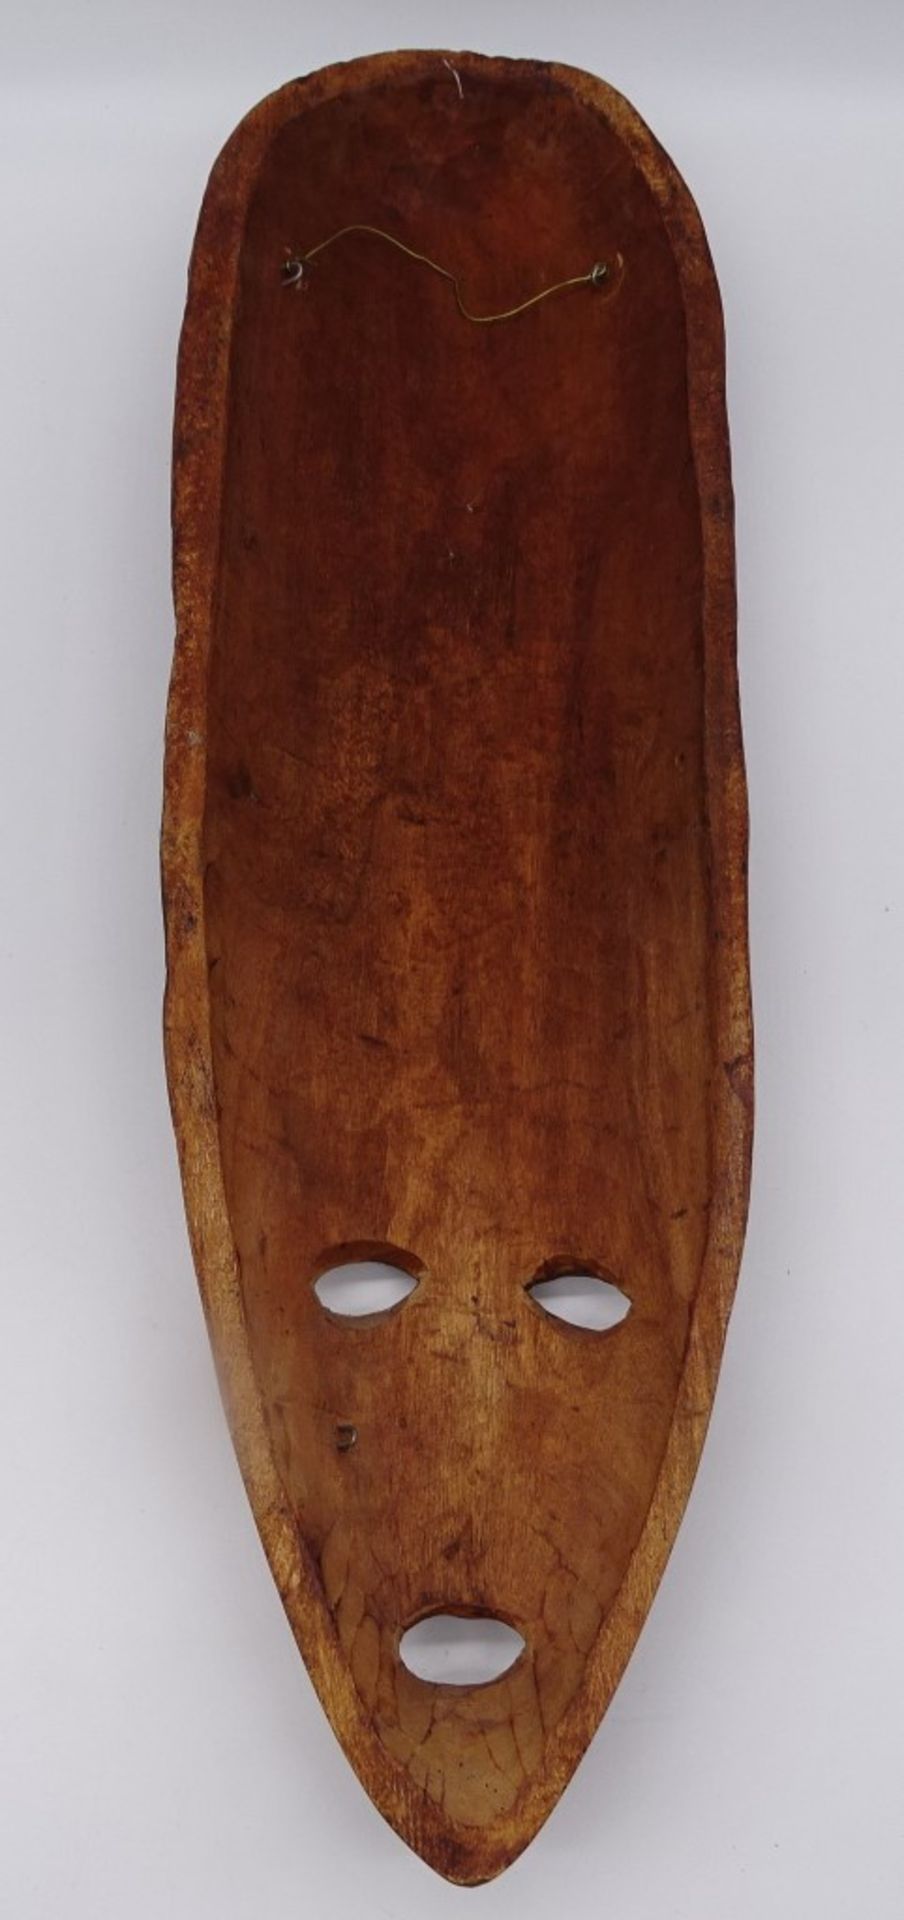 2 Holzmasken, Afrika?, L. 60 cm - Bild 3 aus 9